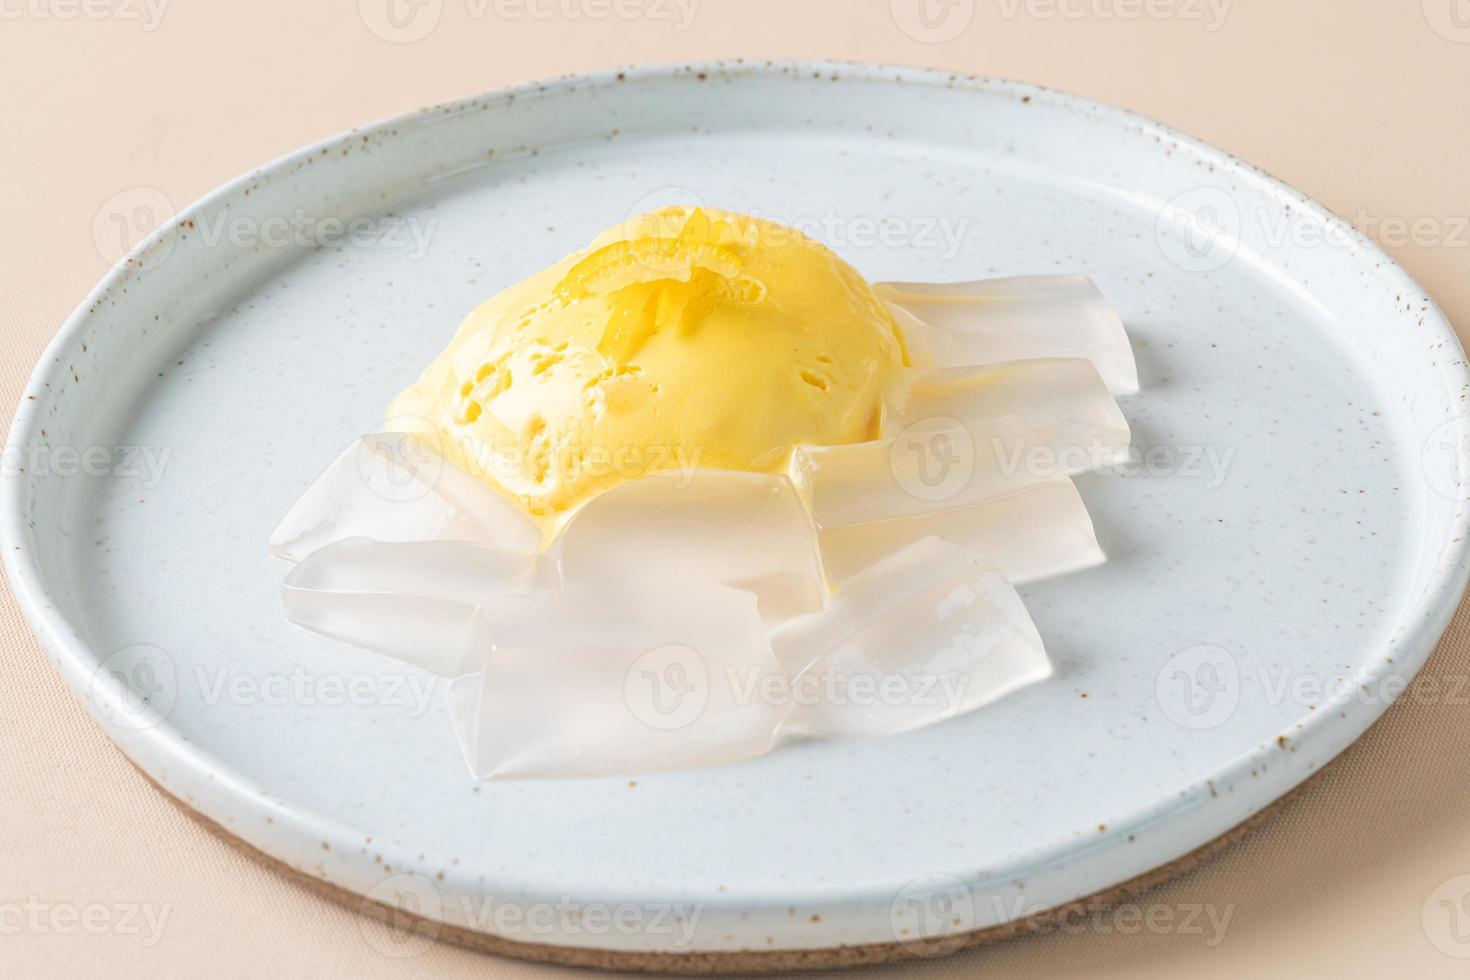 yuzu-sinaasappelroomijs met geleipudding op bord foto